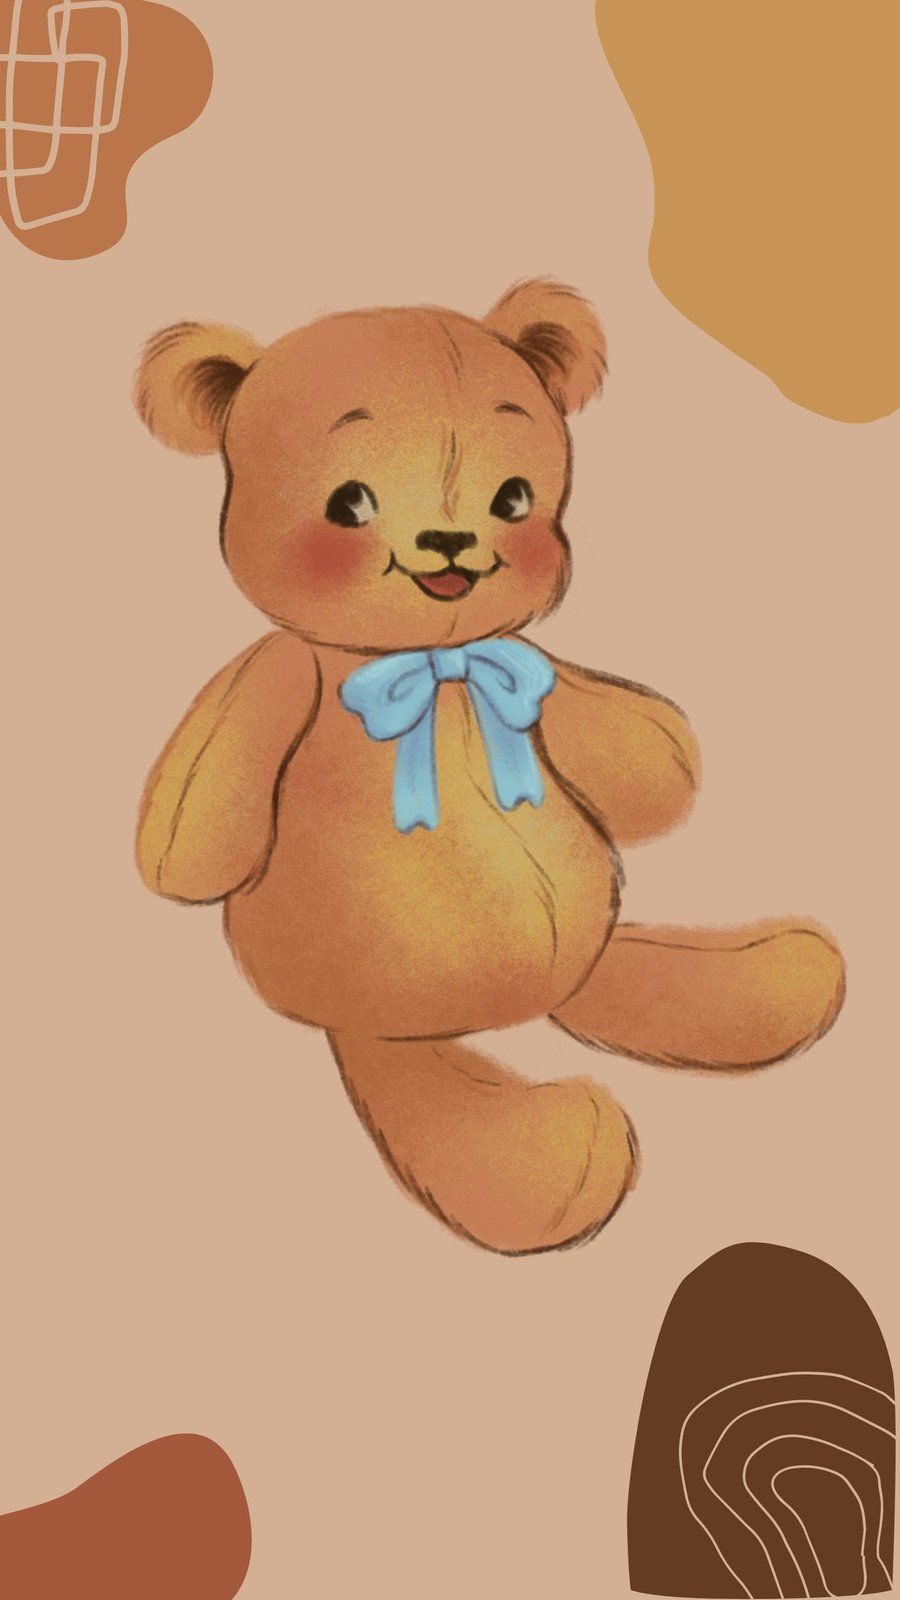 A brown teddy bear with a blue bow tie - Teddy bear